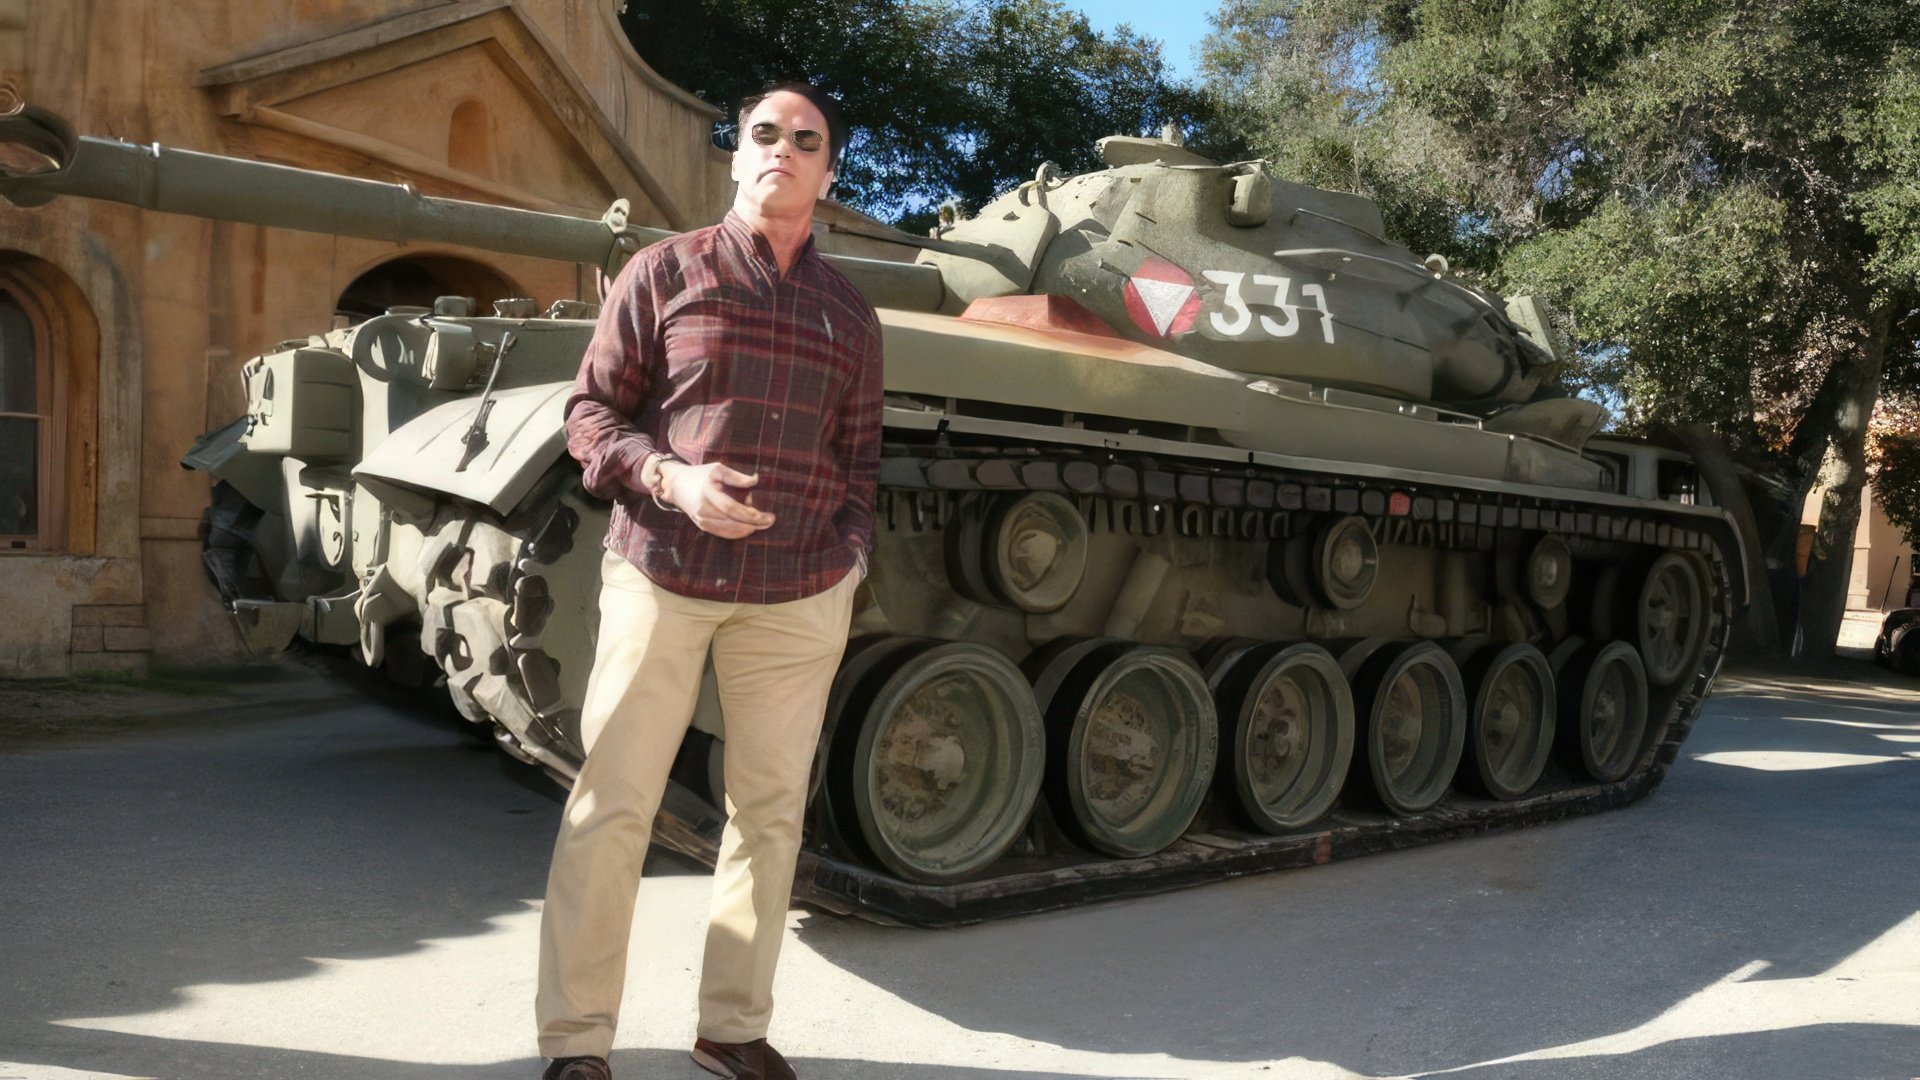 Schwarzenegger has a personal tank